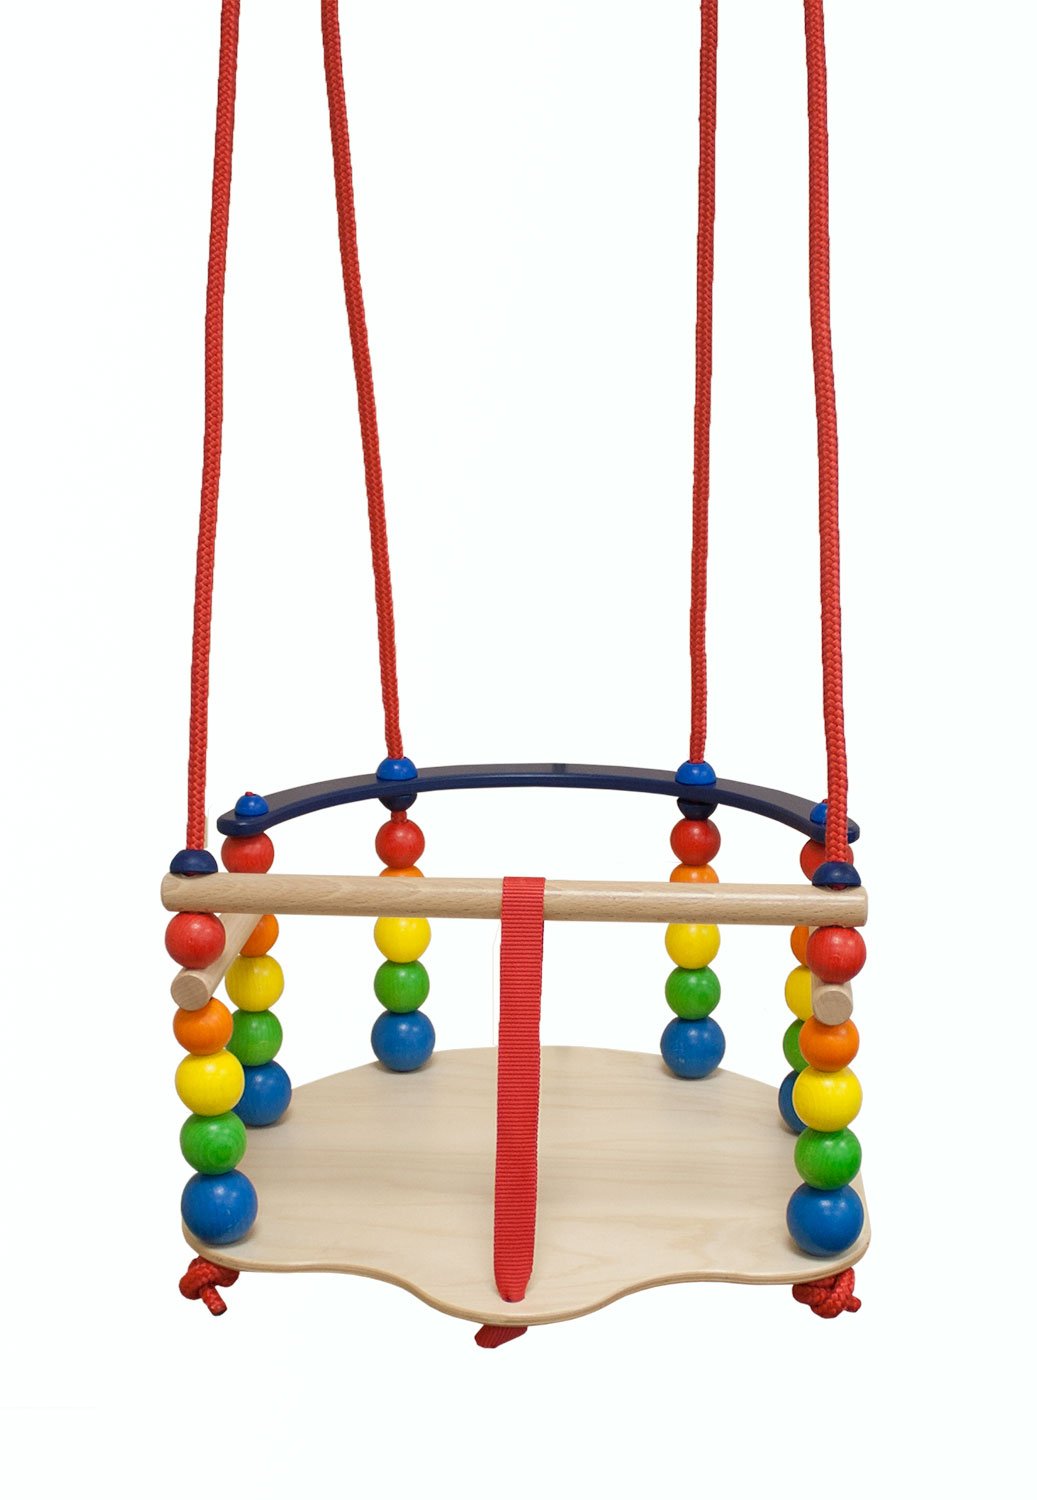 Hess Holzspielzeug 31103 - Gitterschaukel aus Holz, handgefertigt, für Kinder ab 12 Monaten, ca. 37 x 36 x 22 cm, für unbeschwertes Schaukelvergnügen im Haus, auf der Terrasse und im Garten